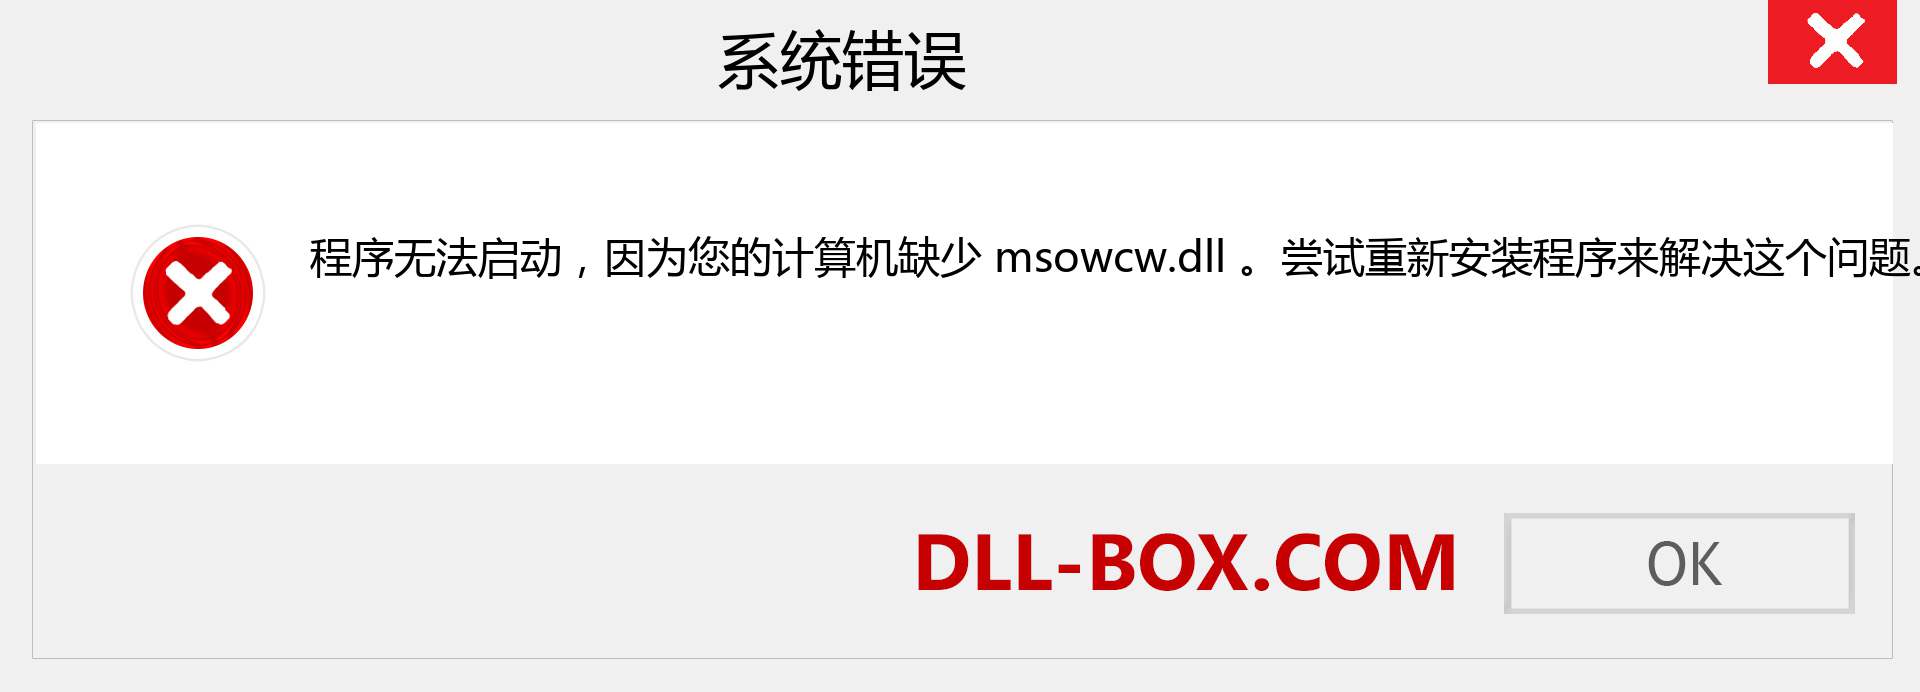 msowcw.dll 文件丢失？。 适用于 Windows 7、8、10 的下载 - 修复 Windows、照片、图像上的 msowcw dll 丢失错误